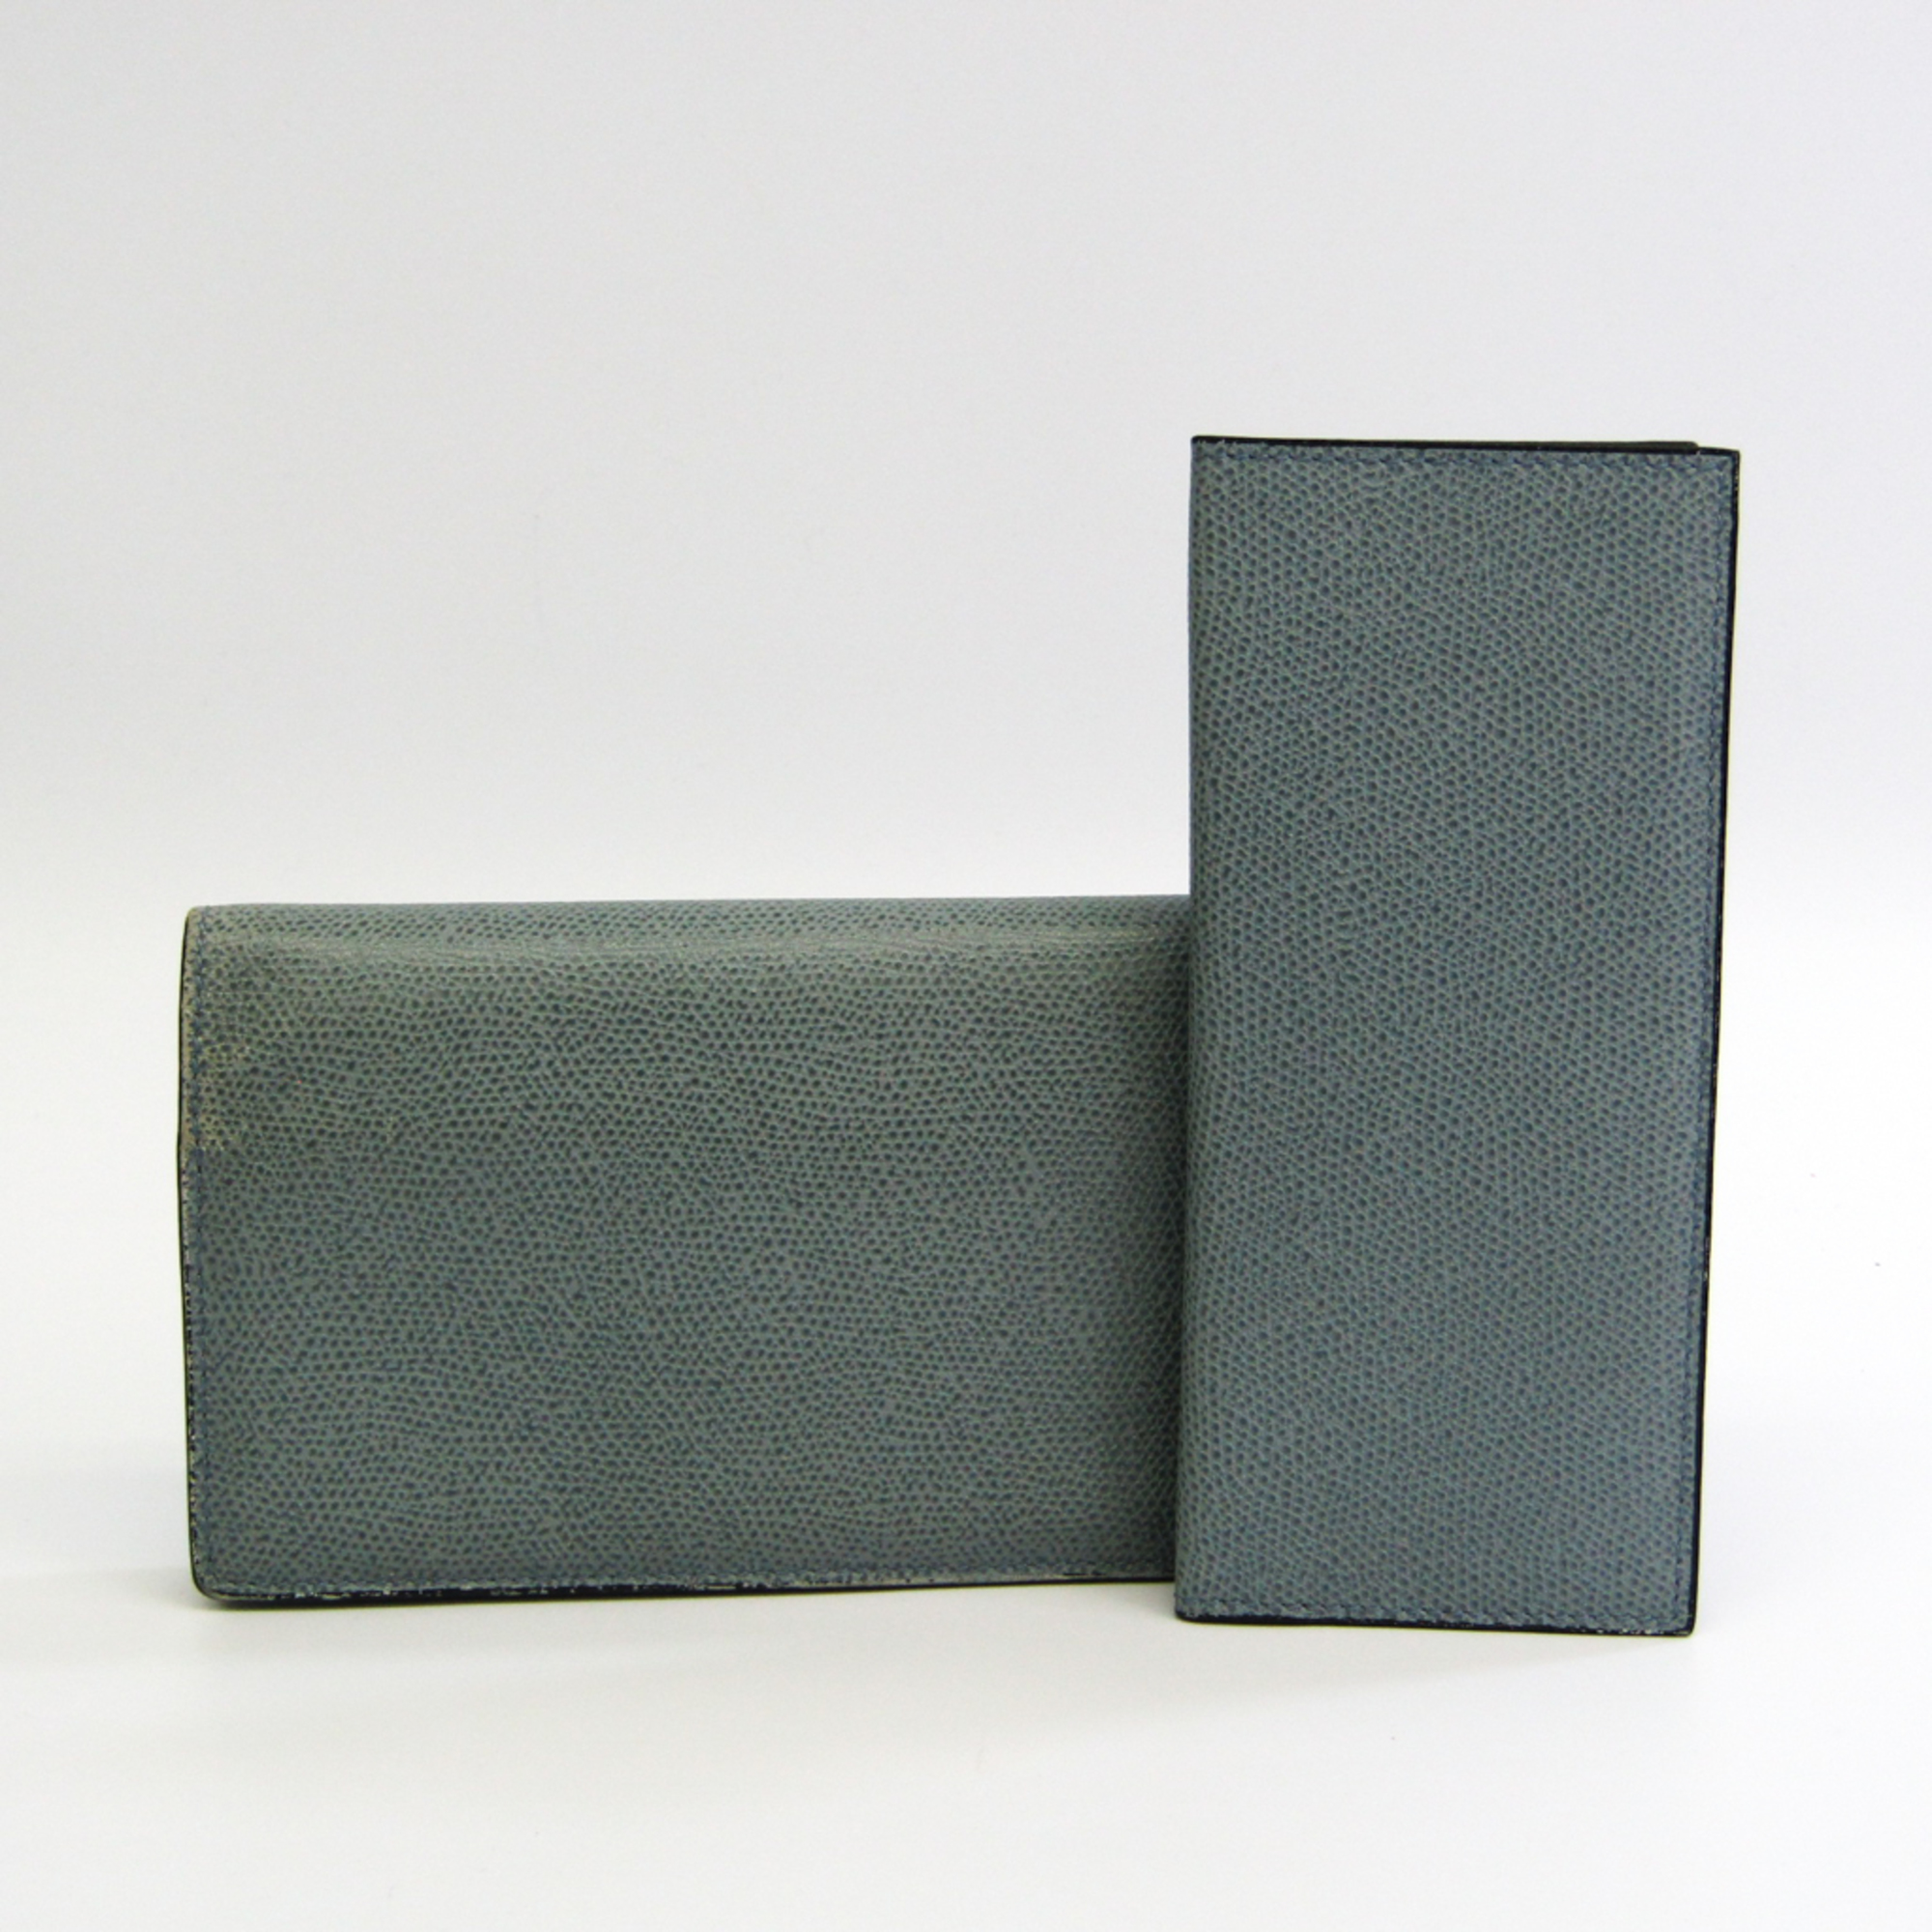 Valextra Women's  Calfskin Long Wallet (bi-fold) Light Blue Gray